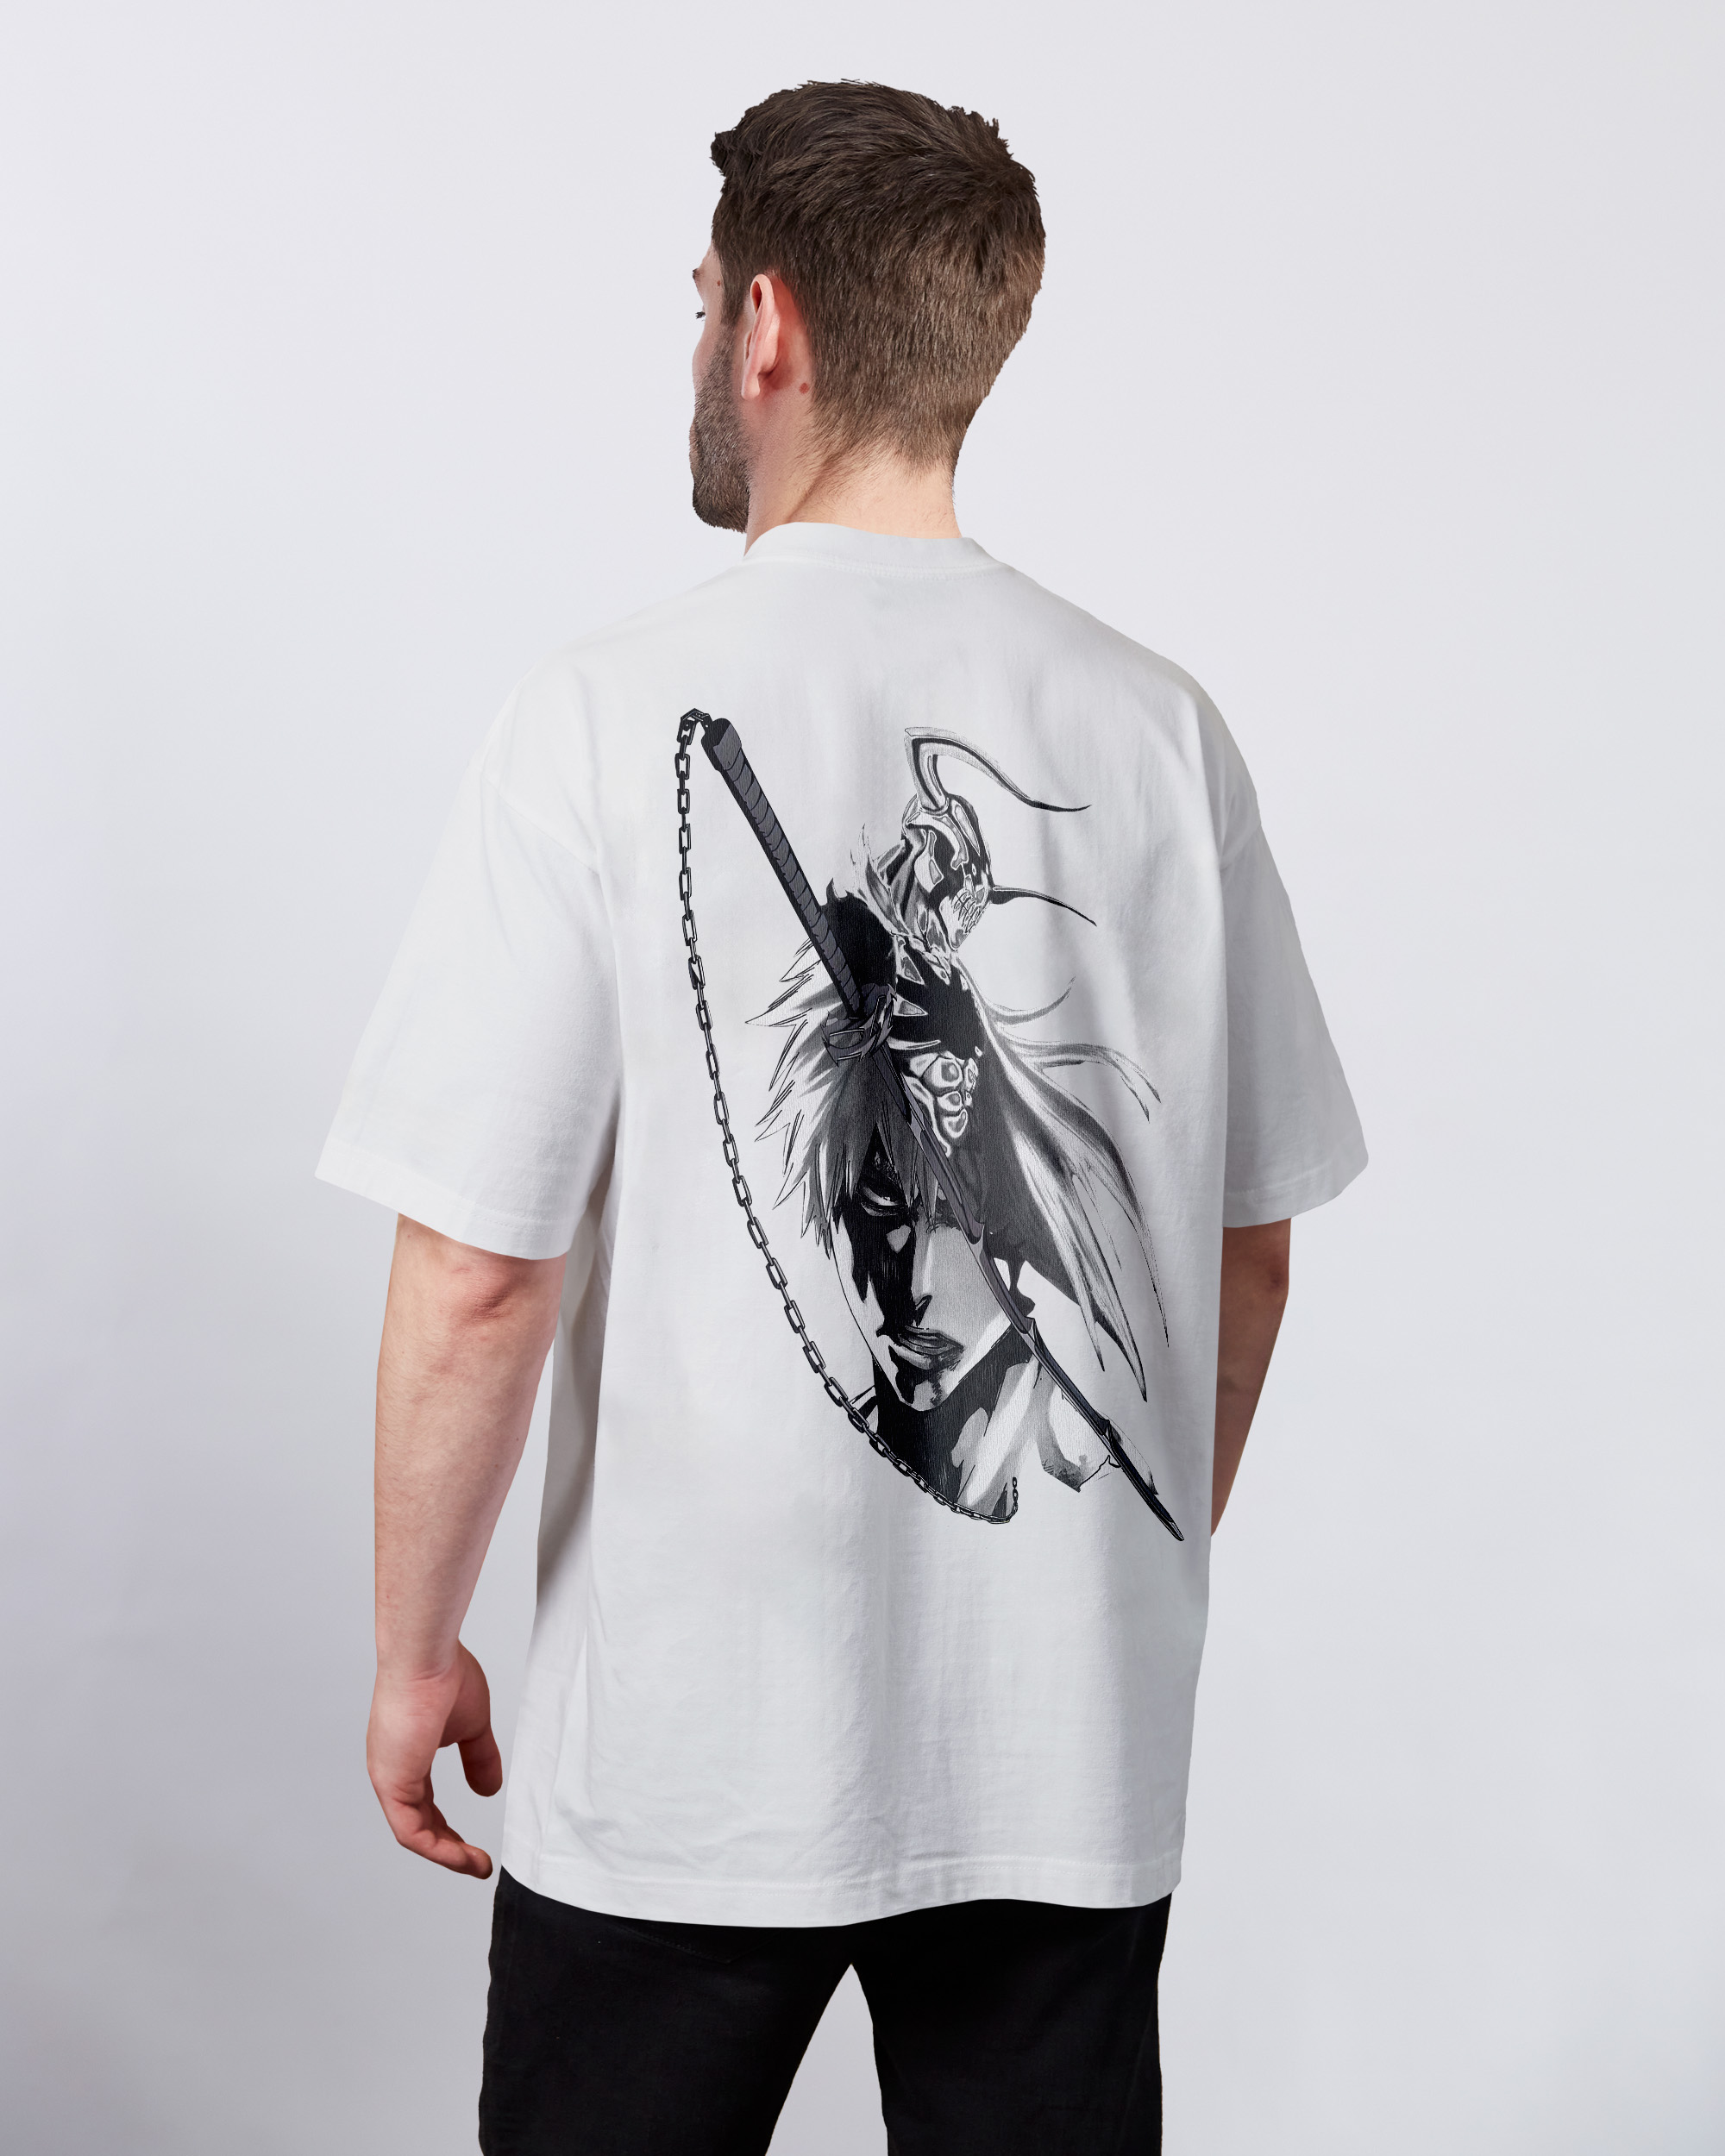 BLEACH - Ichigos Zangetsu T-Shirt